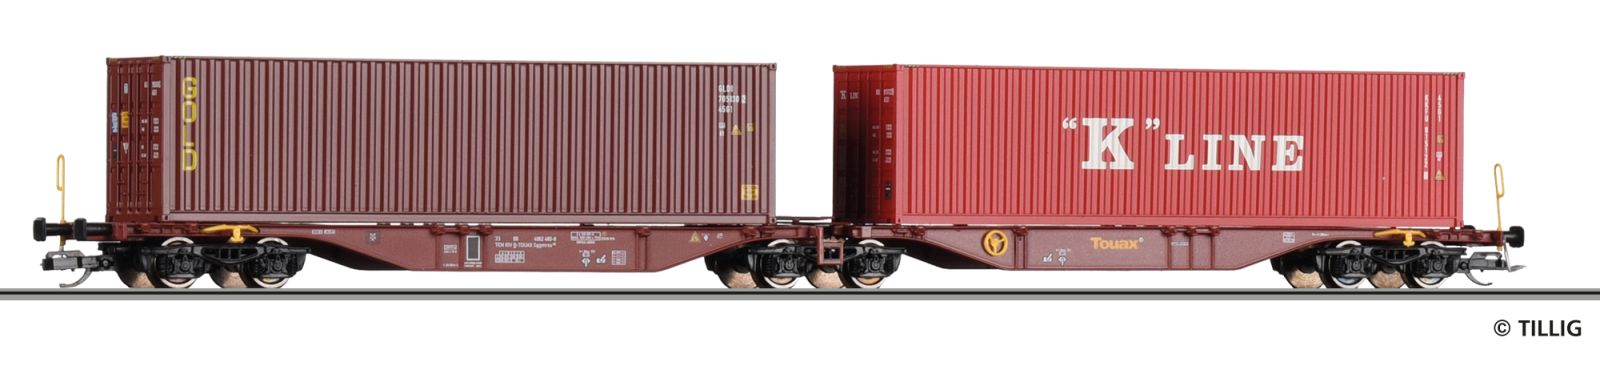 Container car Touax